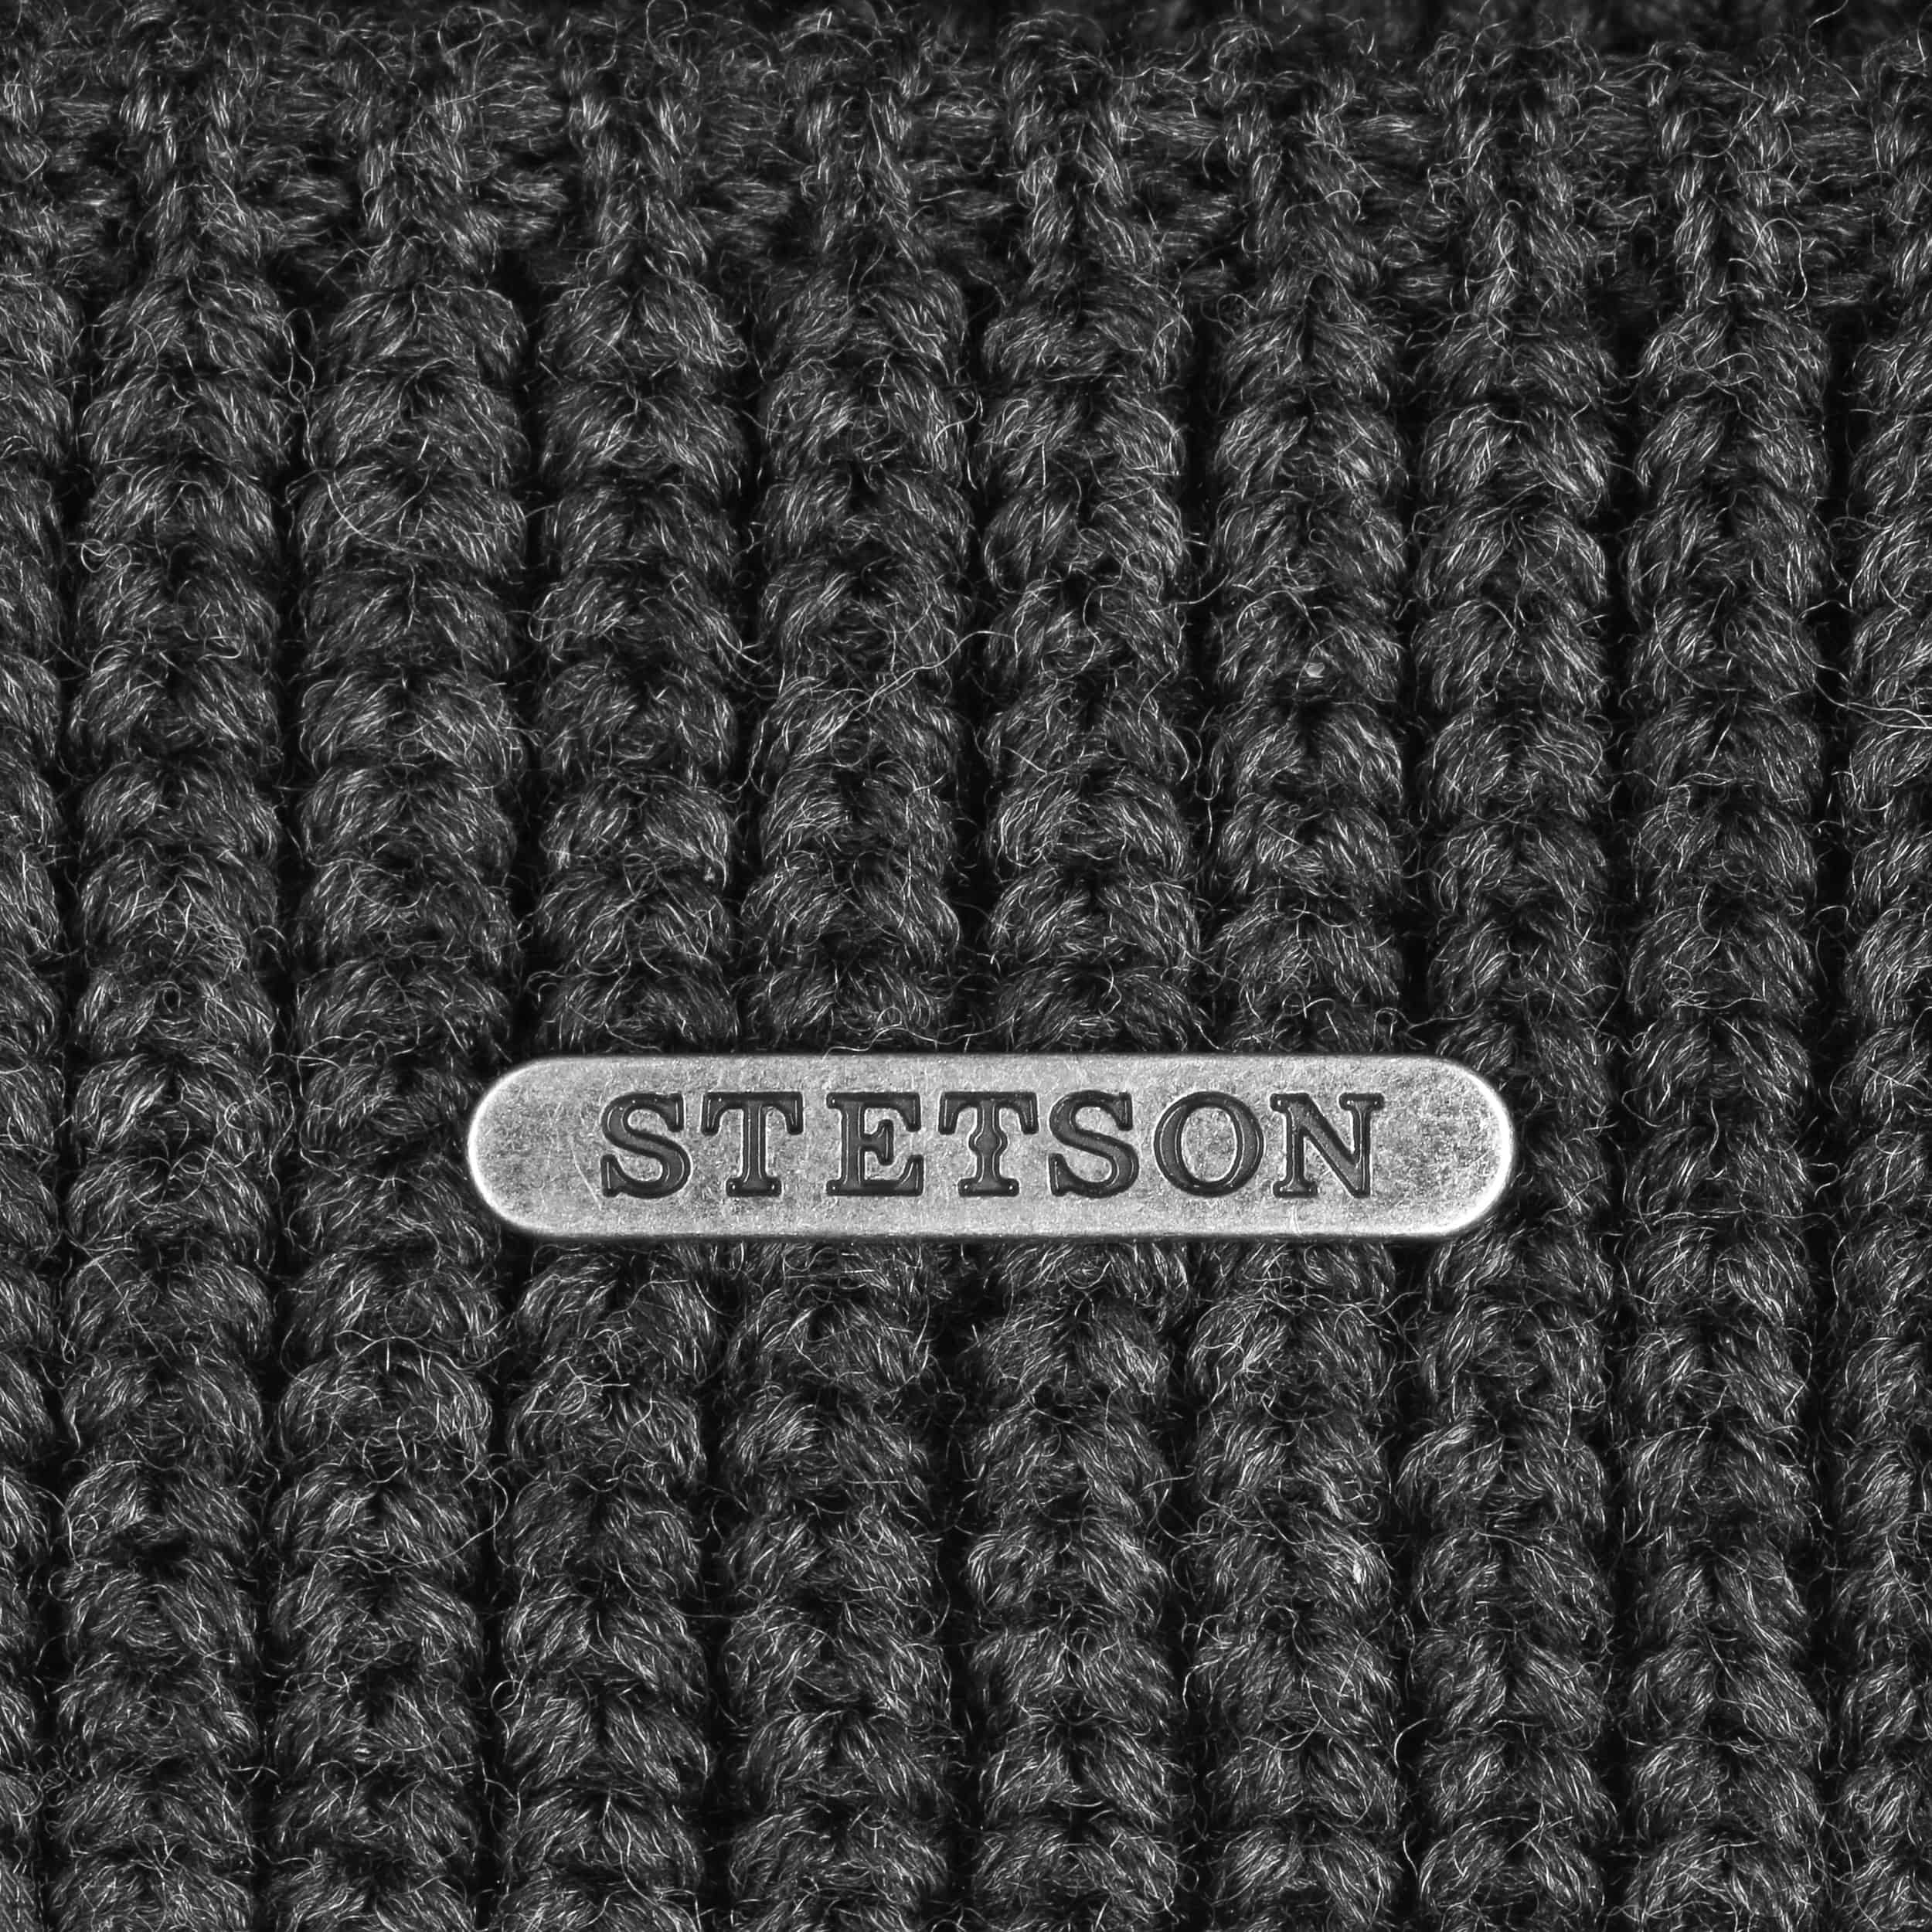 Nashville Knit Docker Cap by Stetson - 69,00